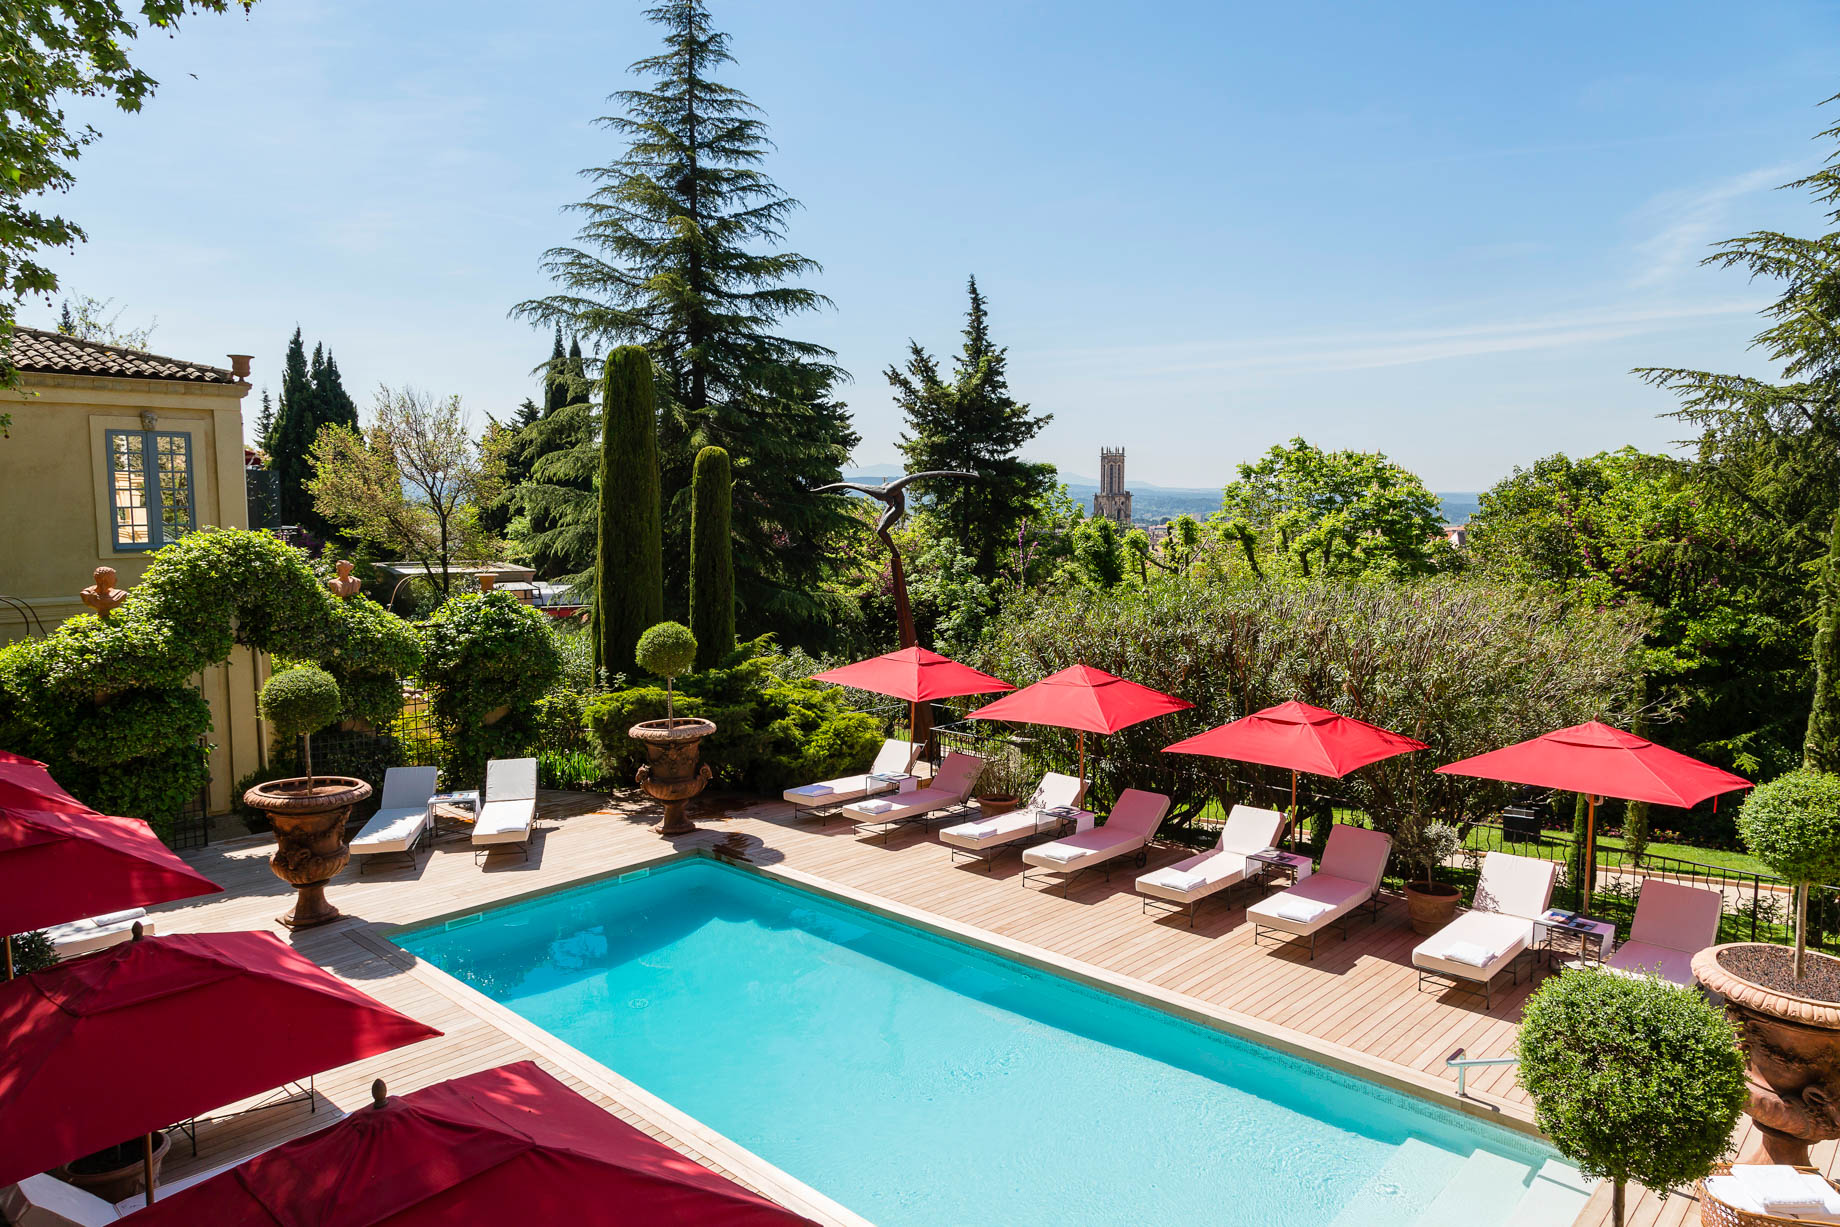 Villa Gallici Relais Châteaux Hotel – Aix-en-Provence, France – Pool Deck View